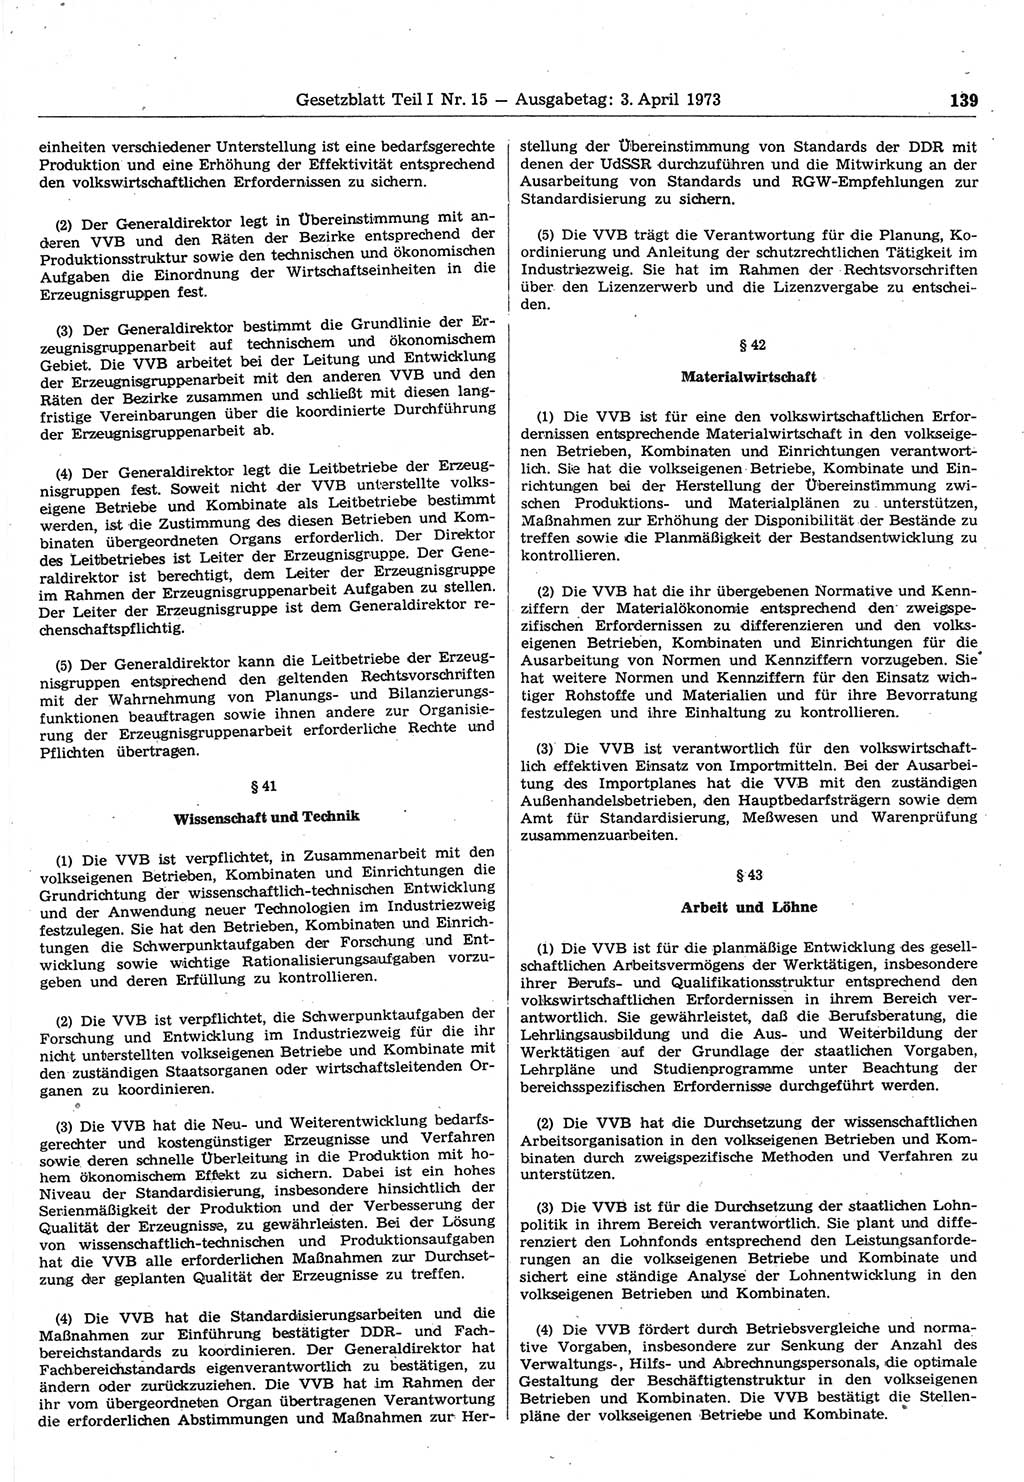 Gesetzblatt (GBl.) der Deutschen Demokratischen Republik (DDR) Teil Ⅰ 1973, Seite 139 (GBl. DDR Ⅰ 1973, S. 139)